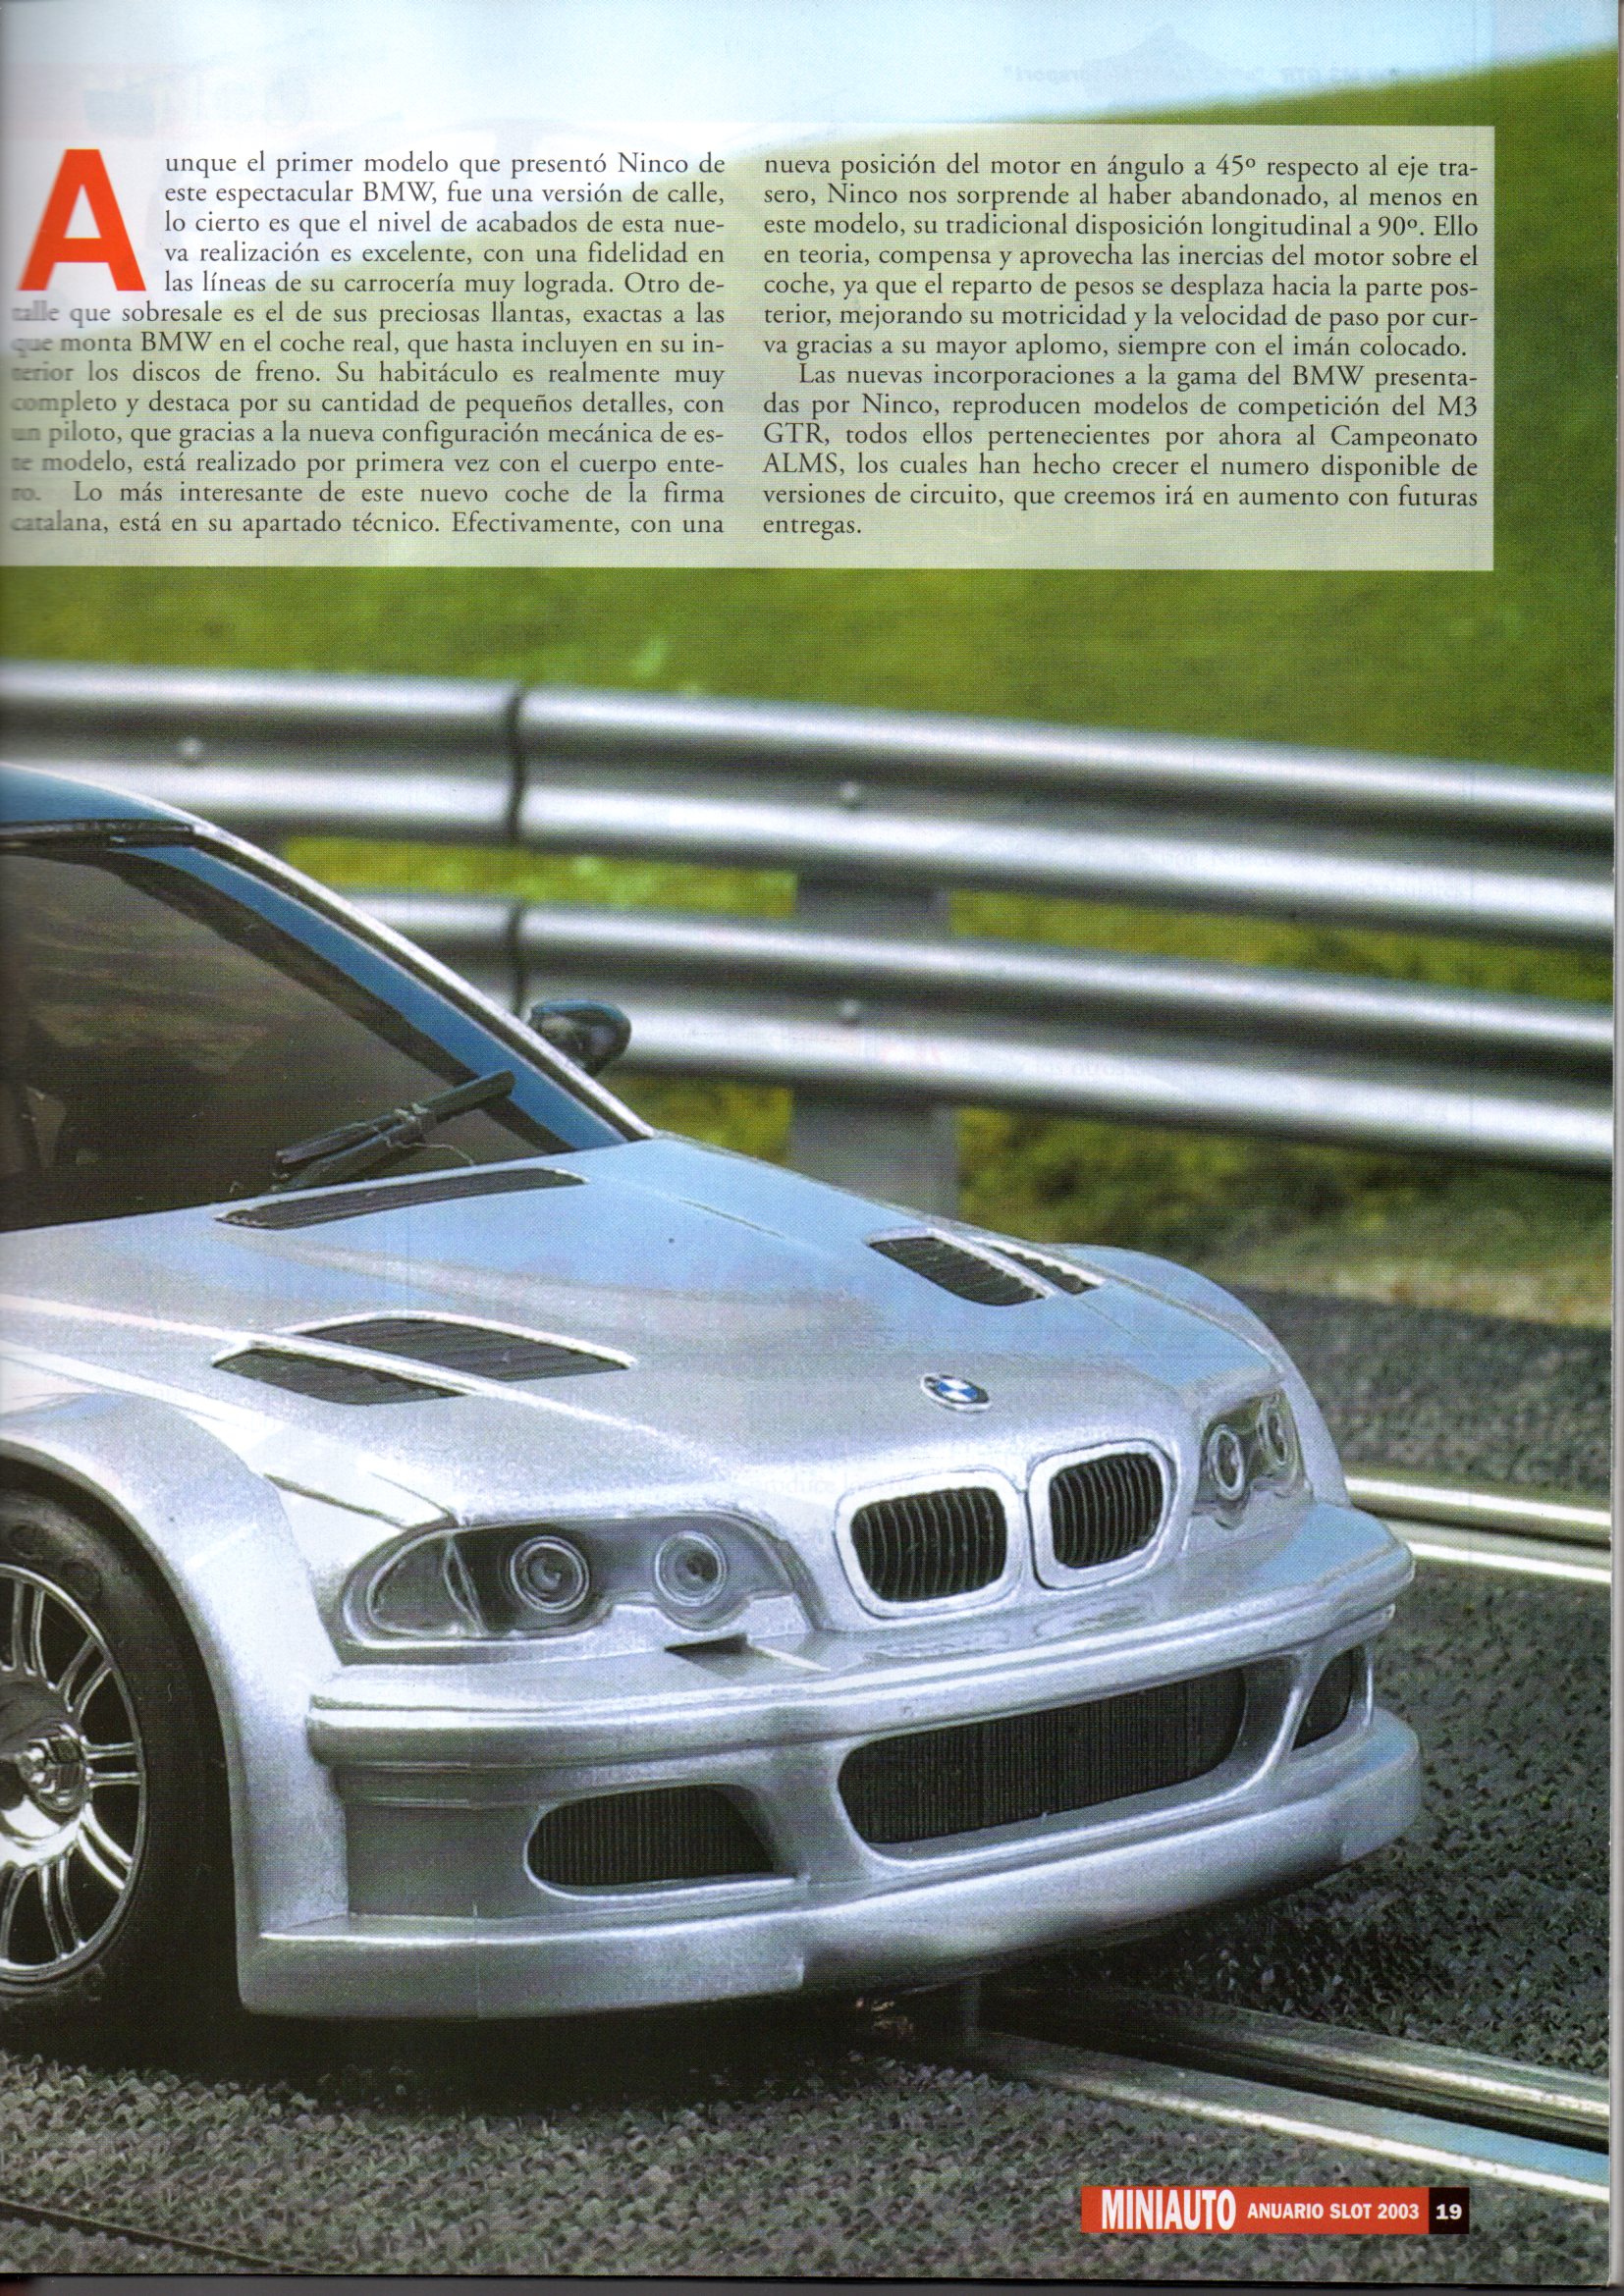 BMW m3 GTR (50461